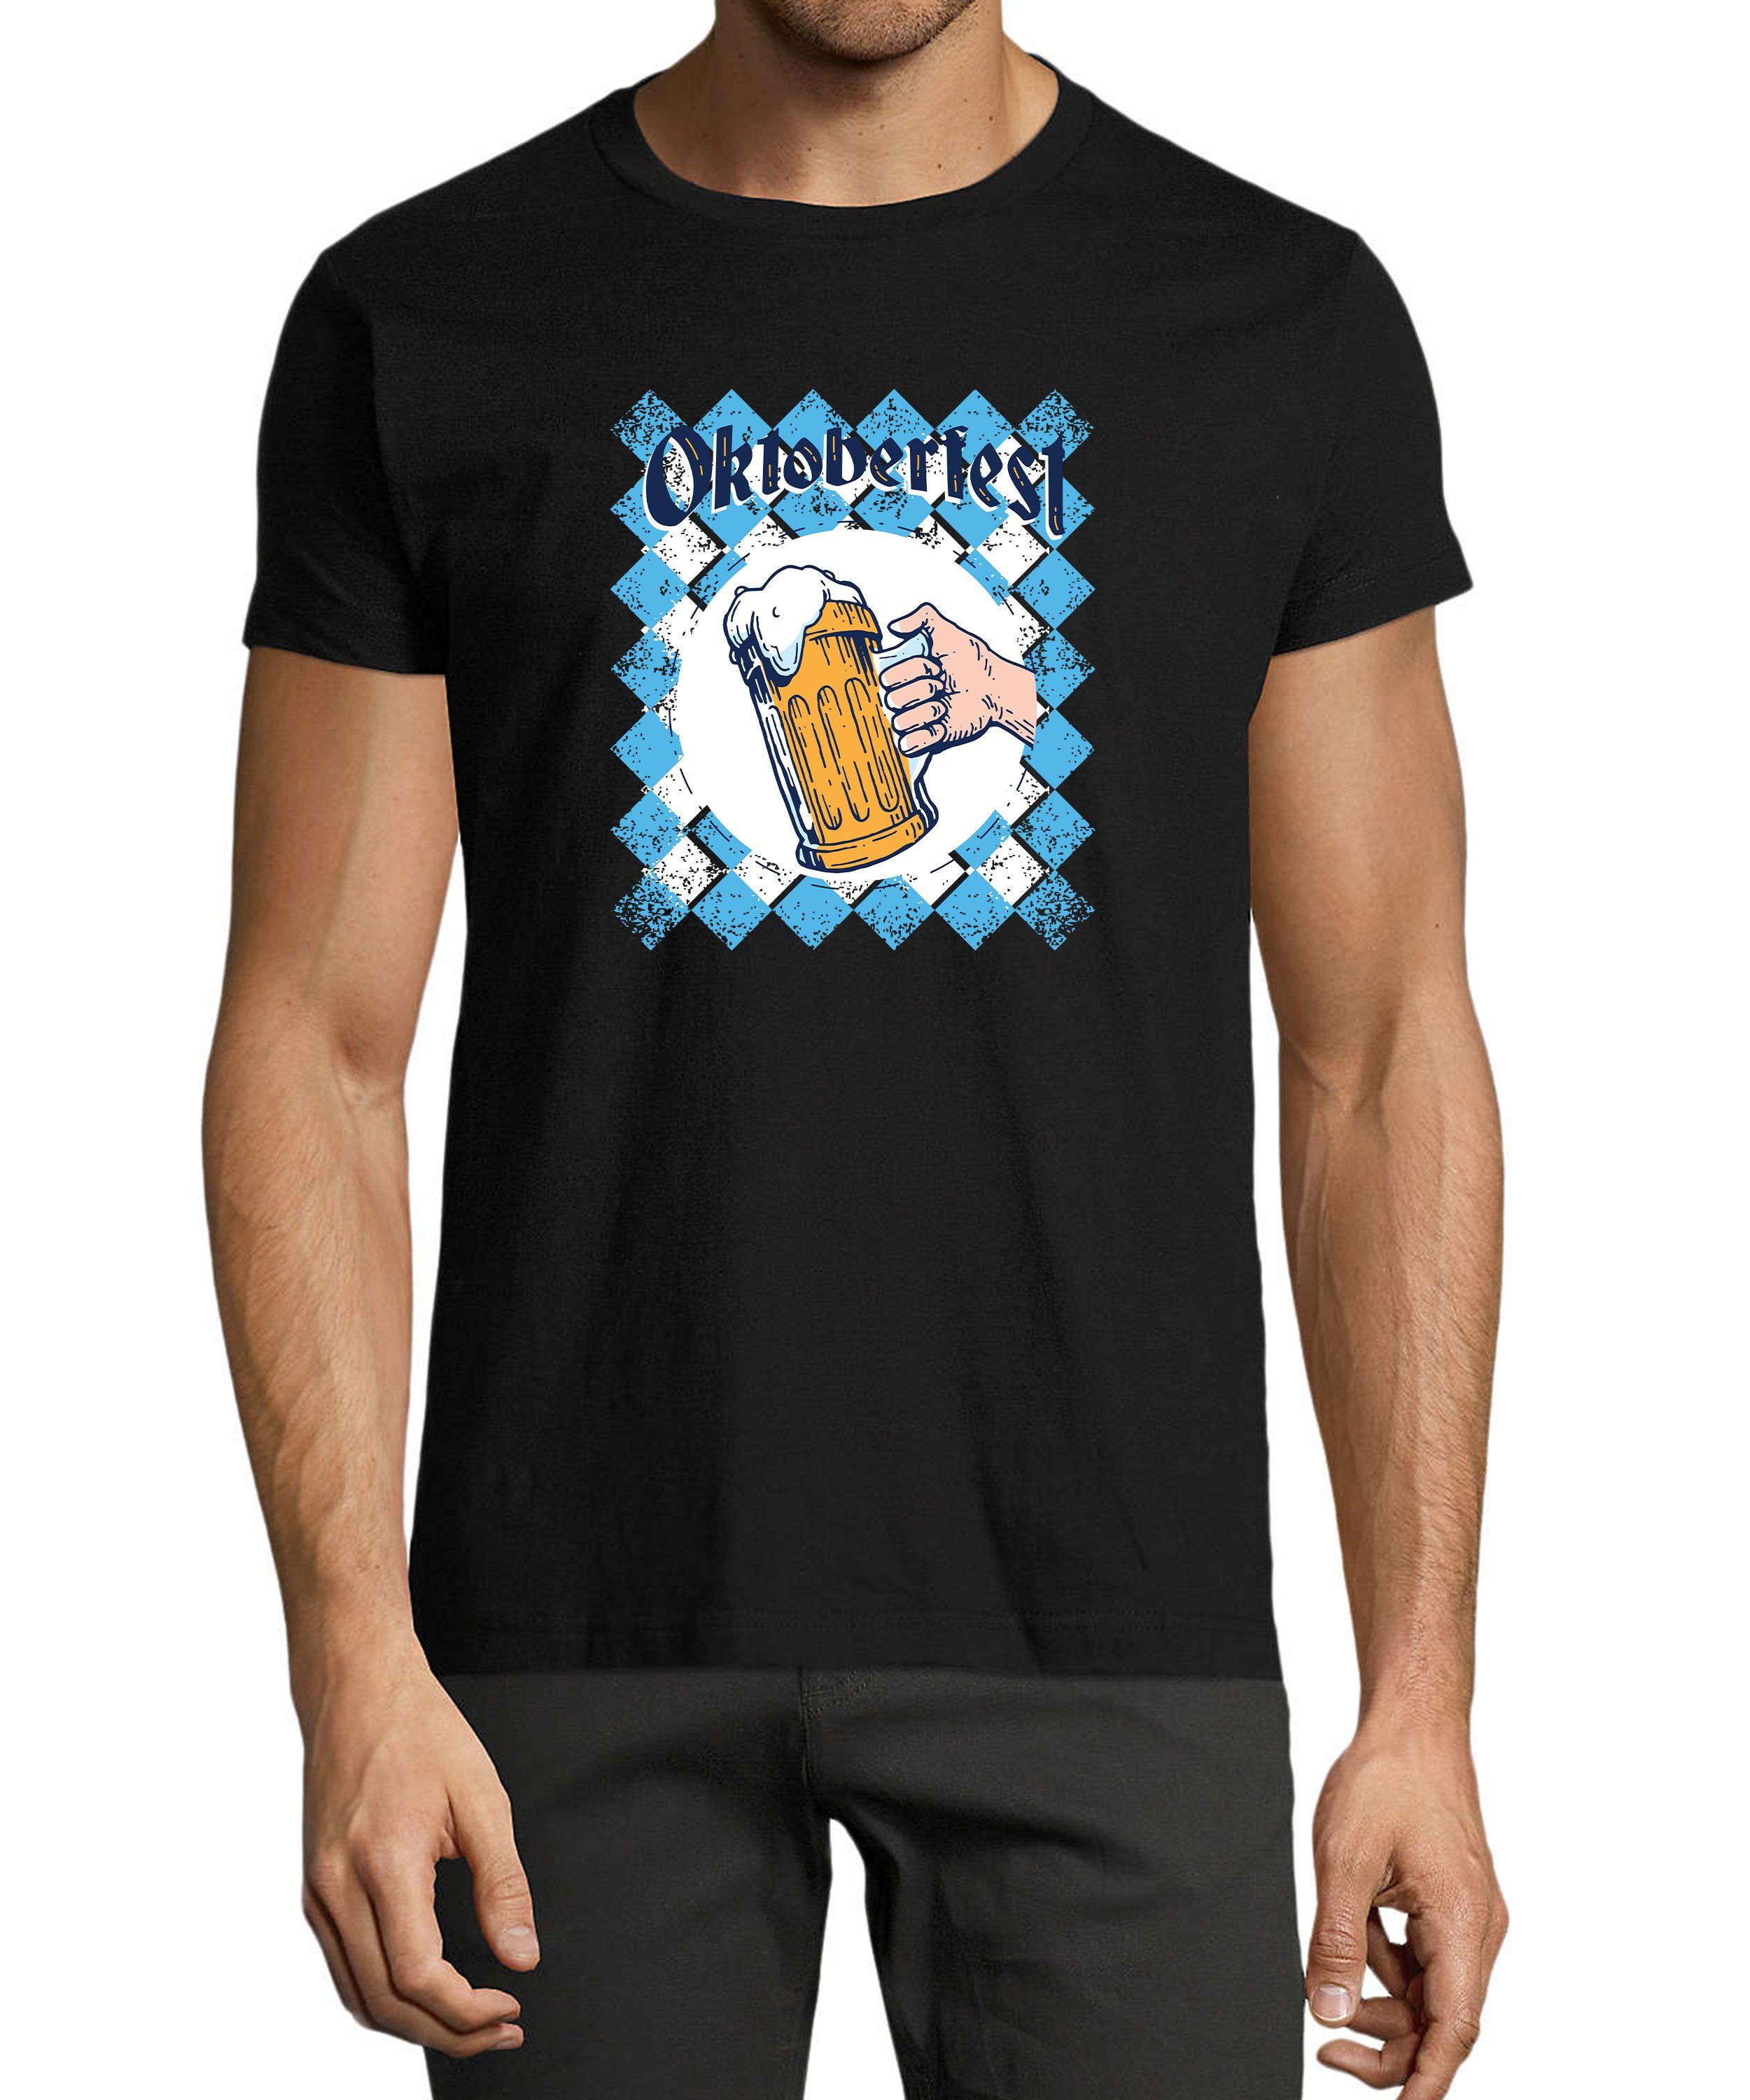 MyDesign24 T-Shirt Herren Print Shirt - Trinkshirt Bierglas Oktoberfest T-Shirt Baumwollshirt mit Aufdruck Regular Fit, i319 schwarz